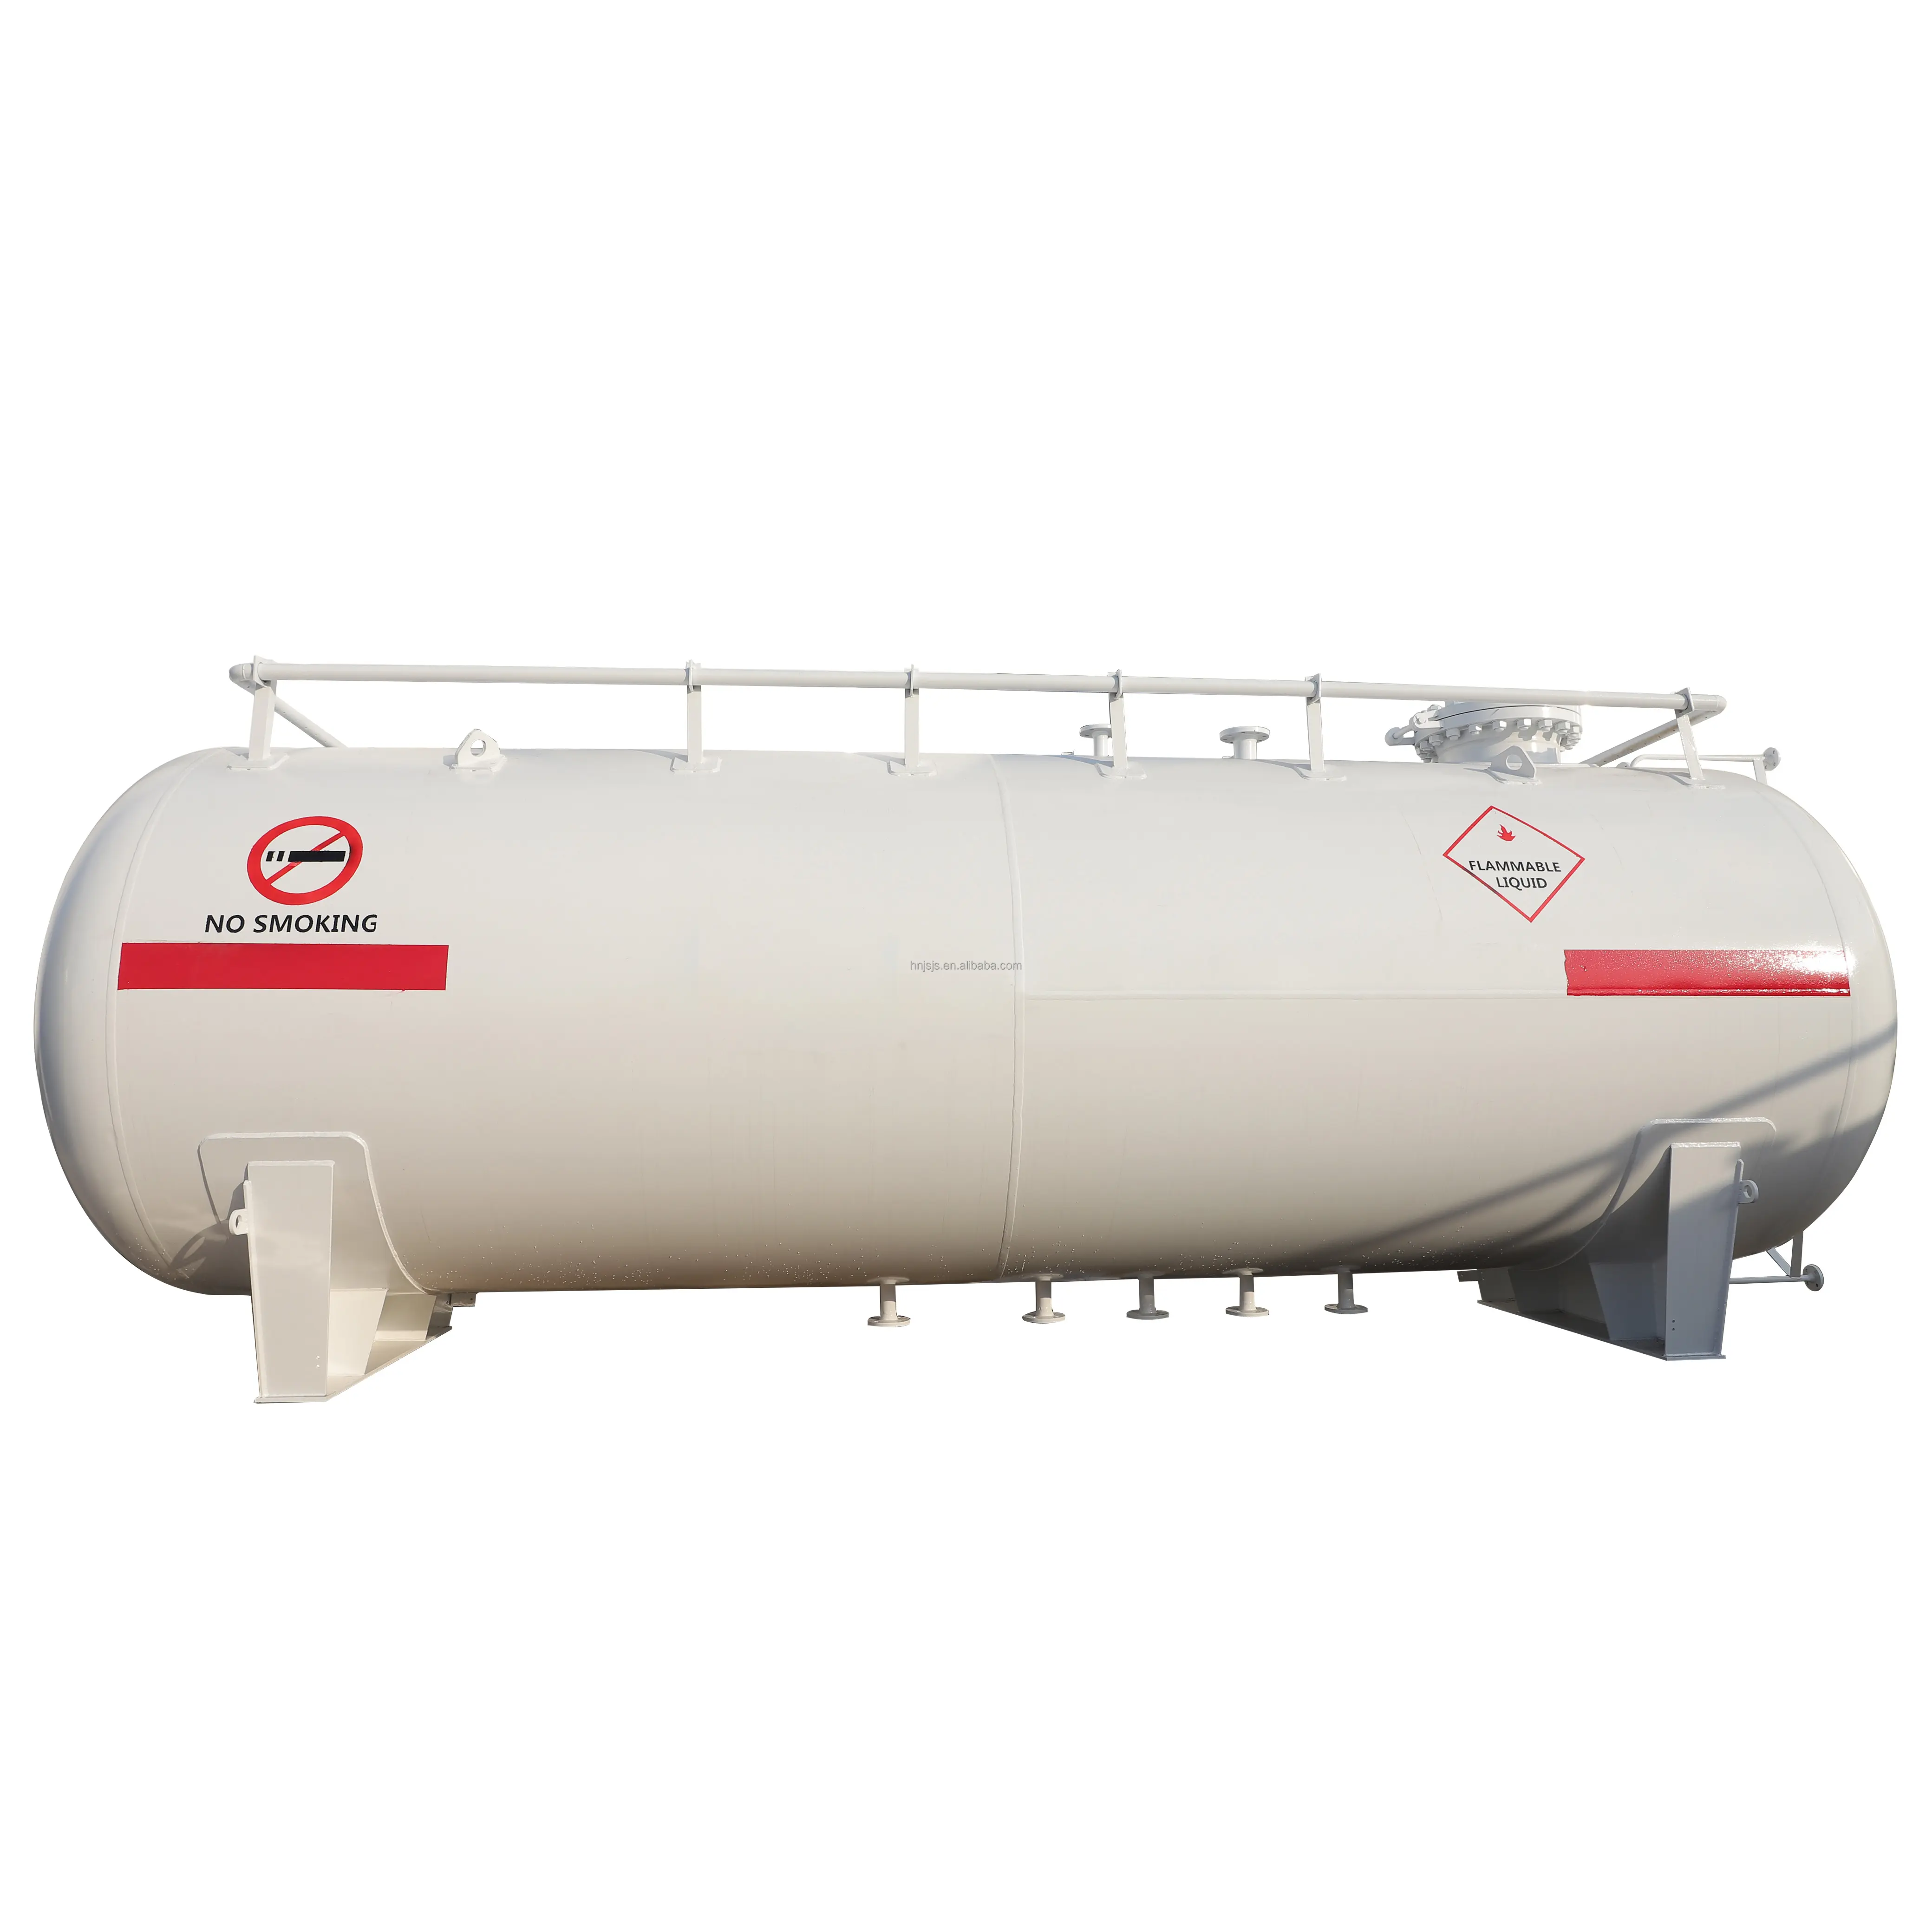 Hersteller von 100 m3 LPG-Speichert ank für Flüssiggas tanks